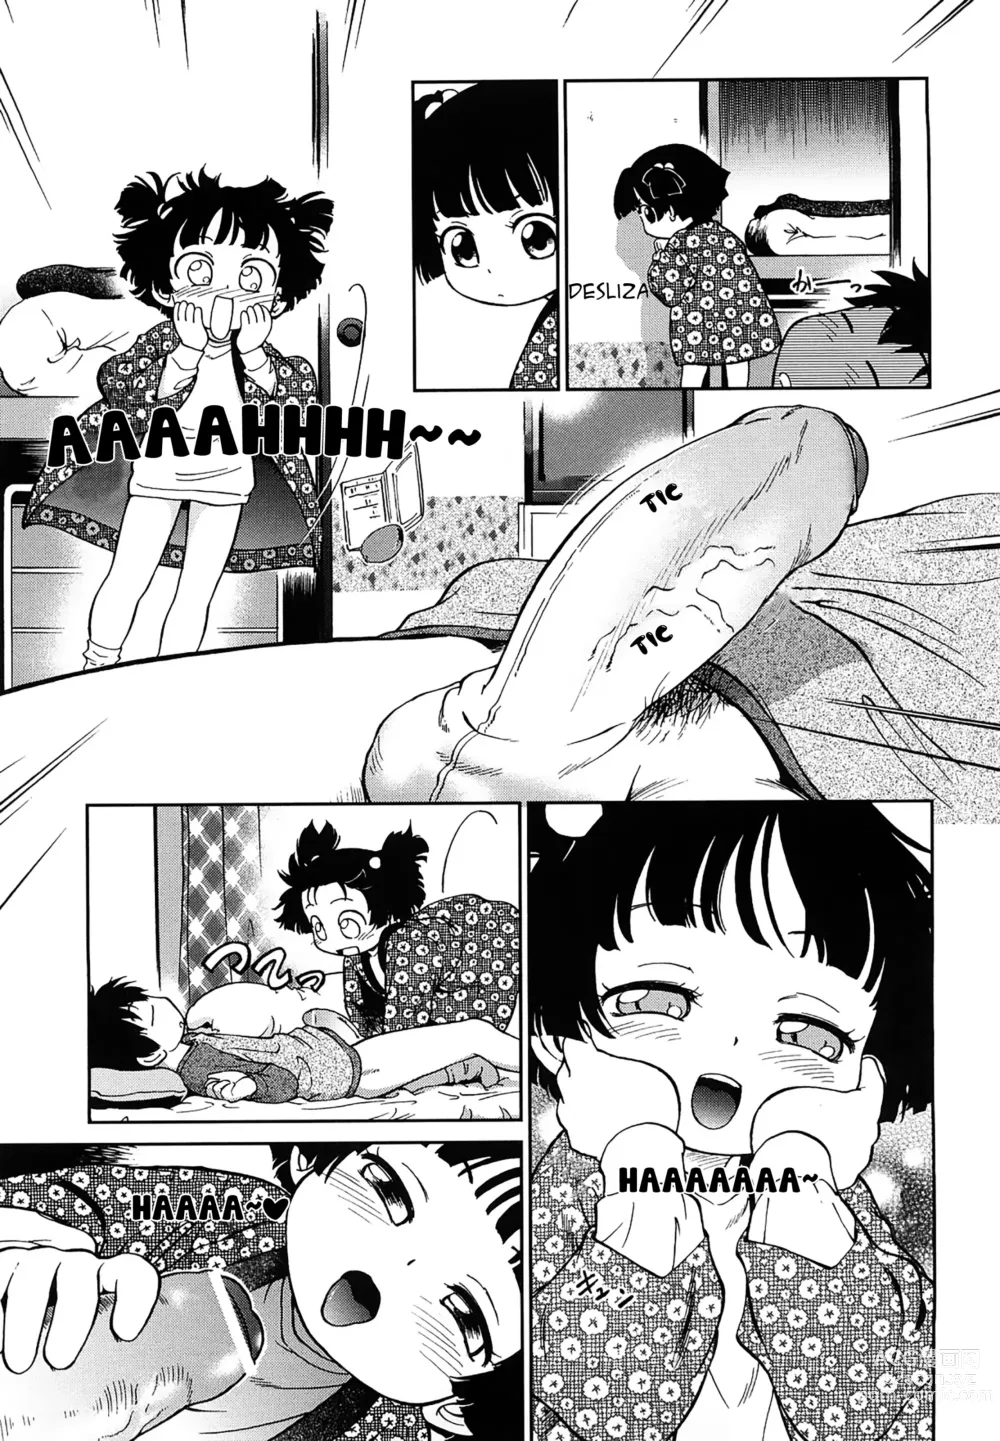 Page 5 of manga 1LDK Hi atari ryoukou warabe tsuki